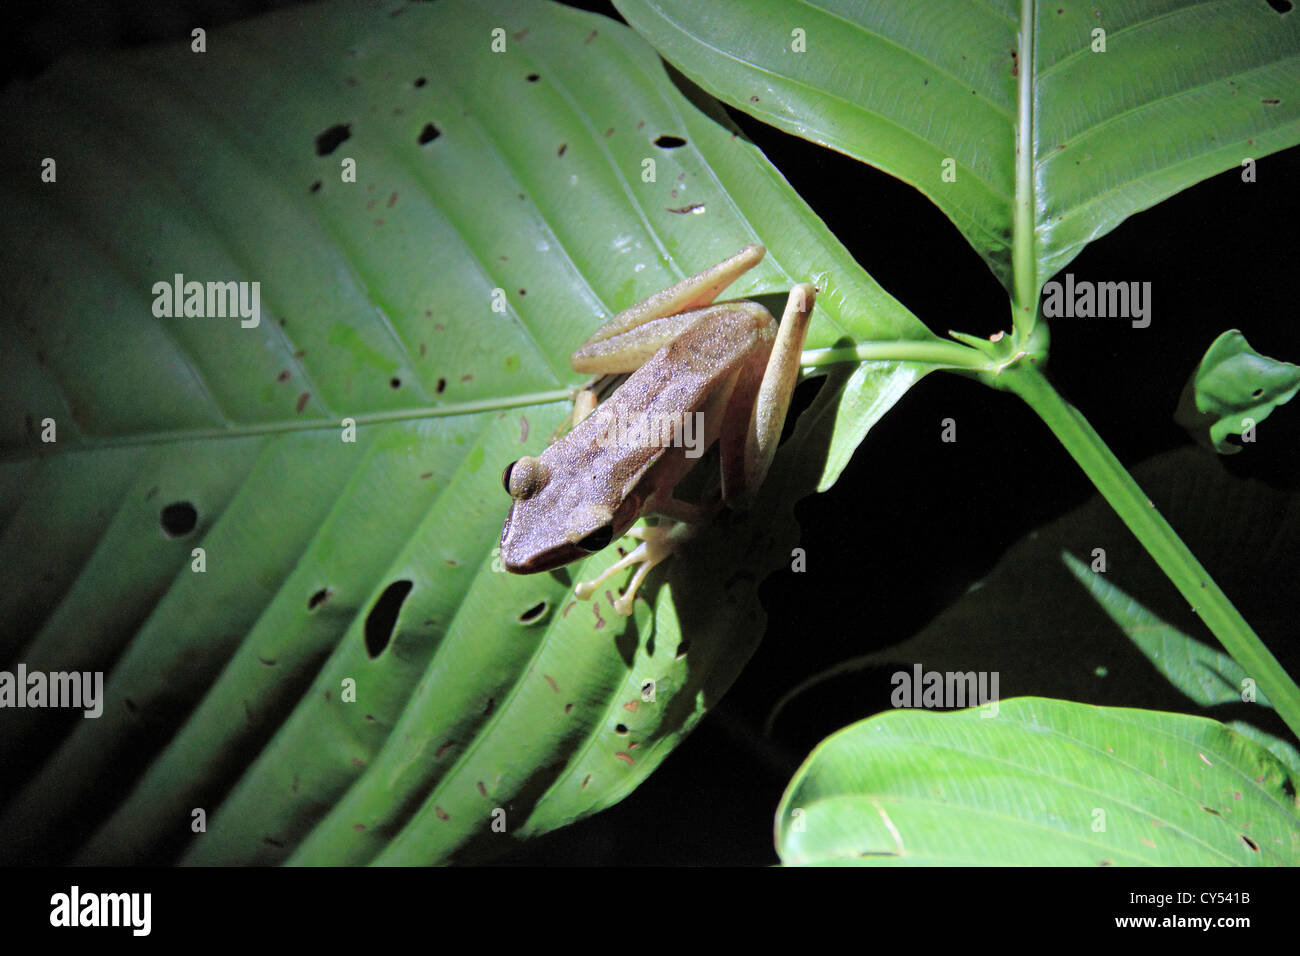 Cobre-cheeked sapo (Hylarana chalconota), Sepilok, distrito de Sandakan, Sabah, Borneo, Malasia, Sudeste de Asia Foto de stock